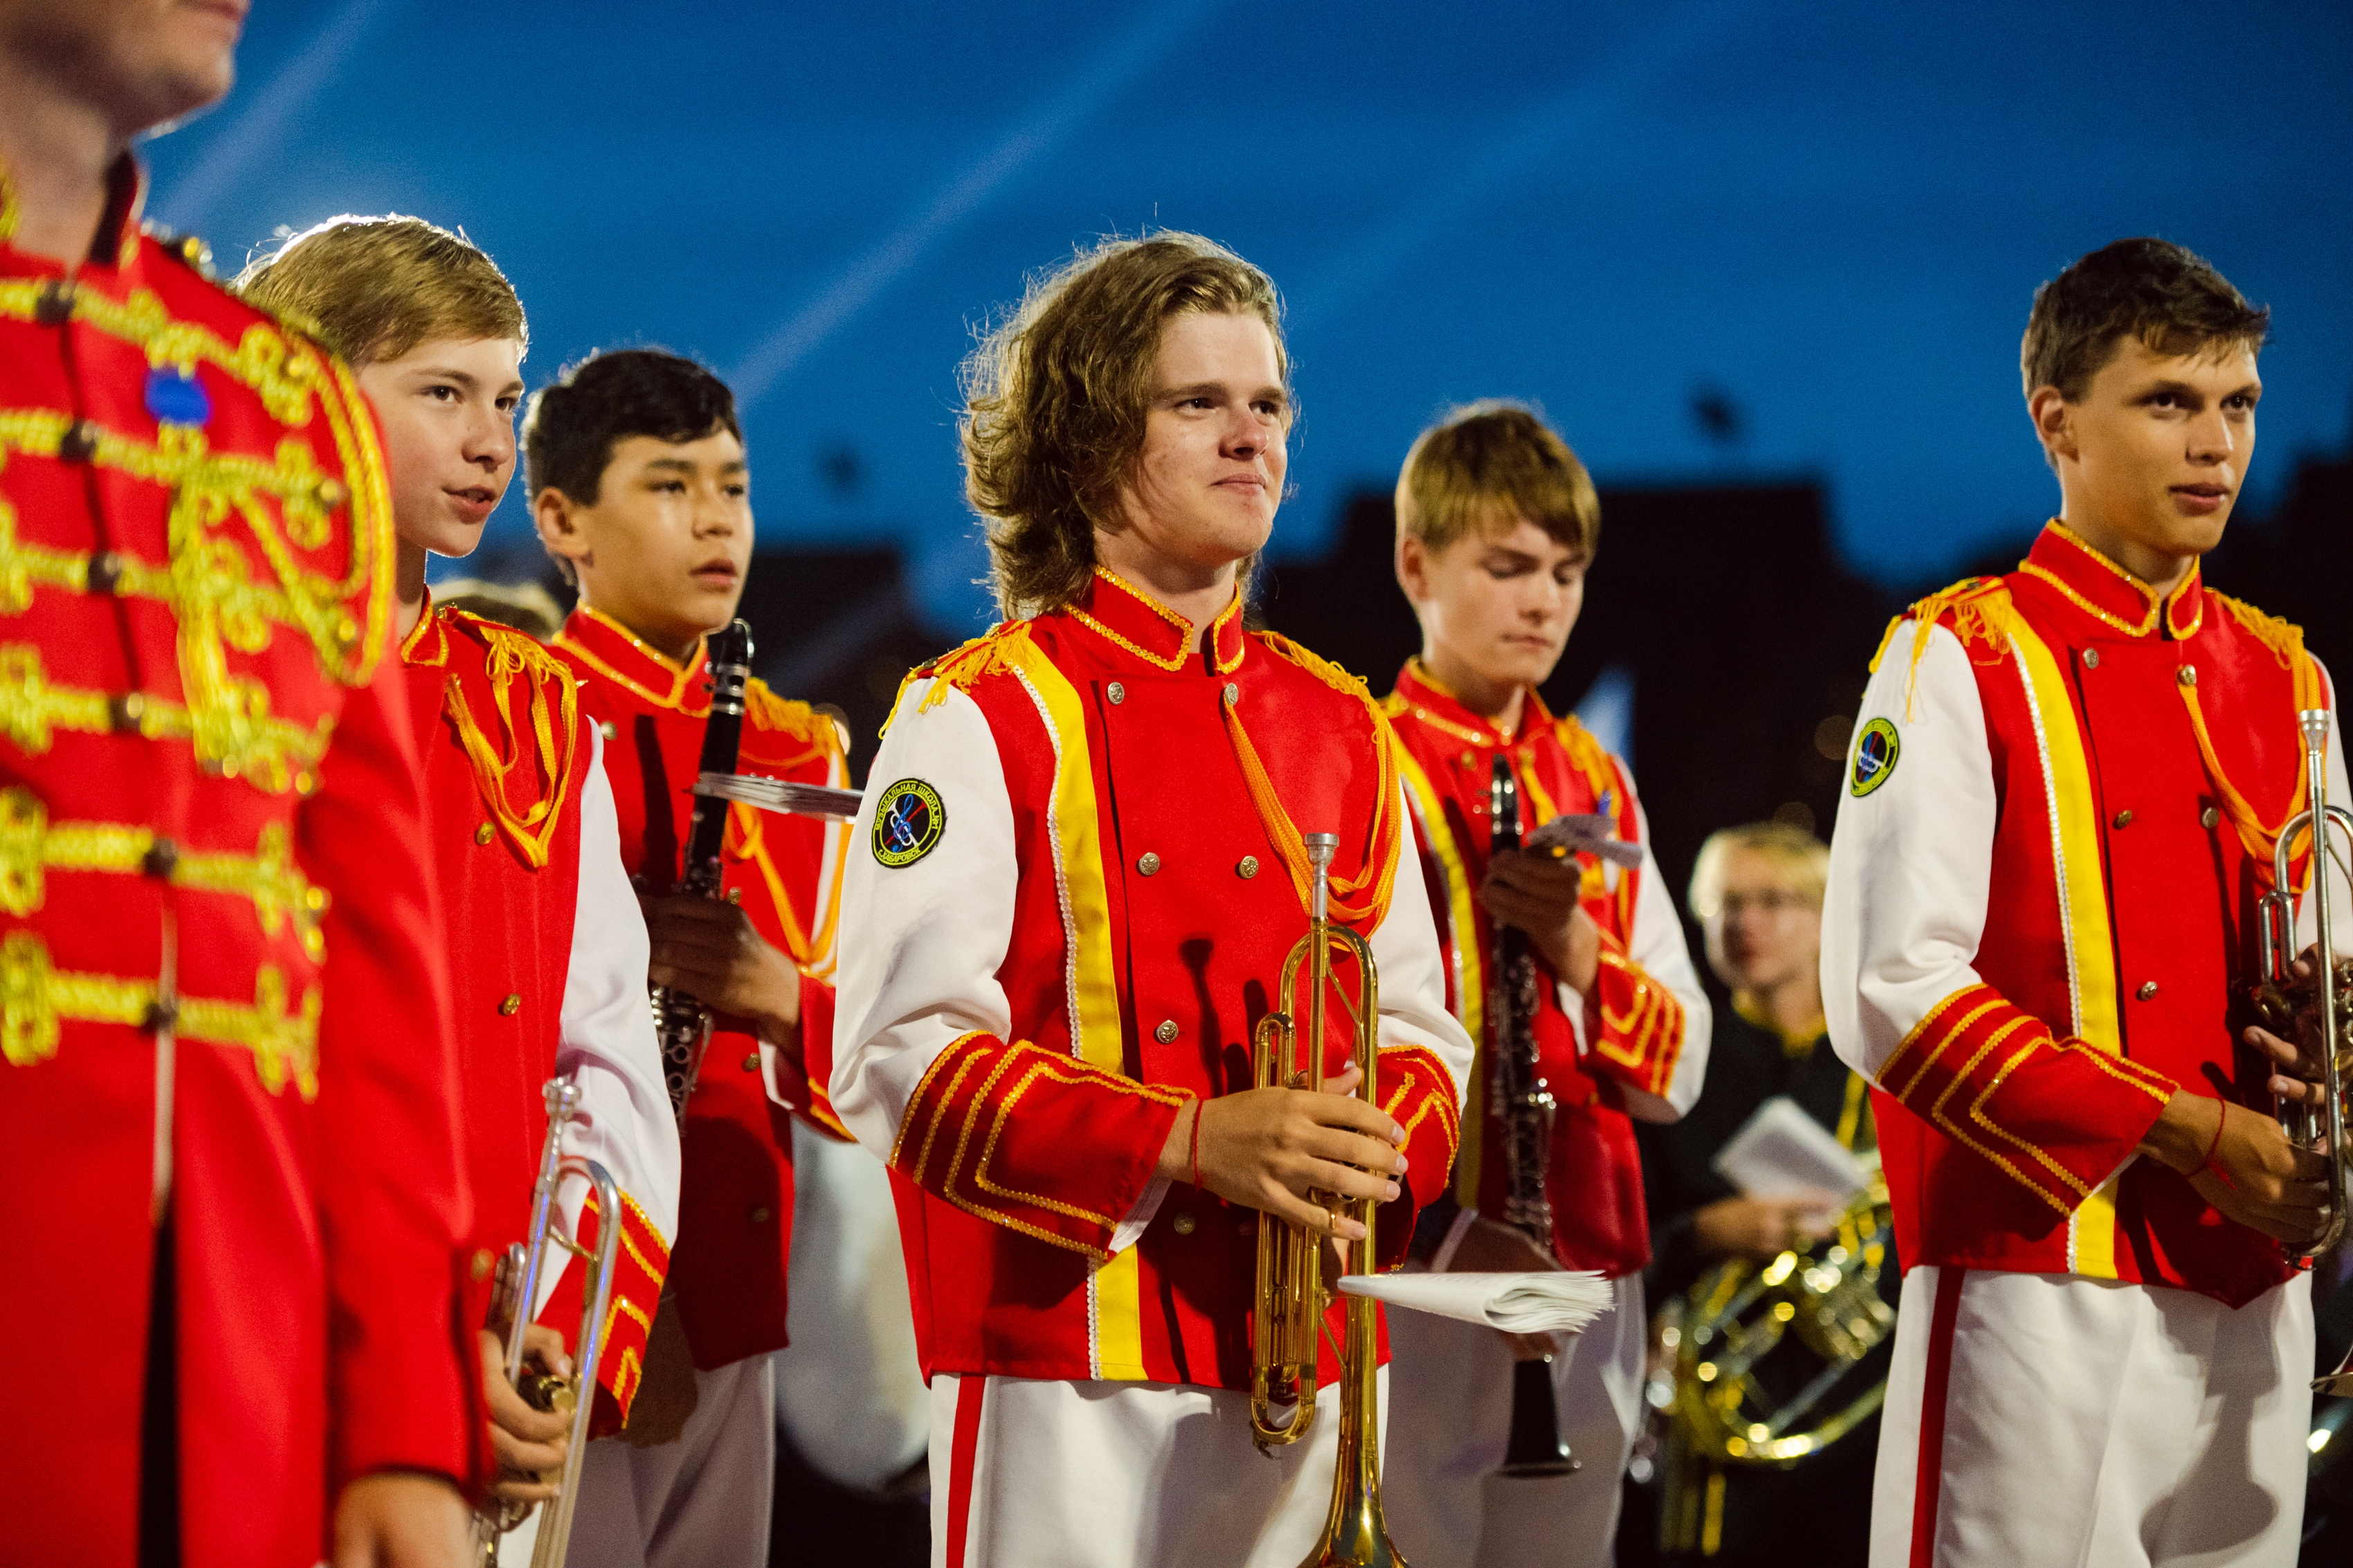 В Петропавловской крепости впервые пройдет парад духовых детско-юношеских оркестров7